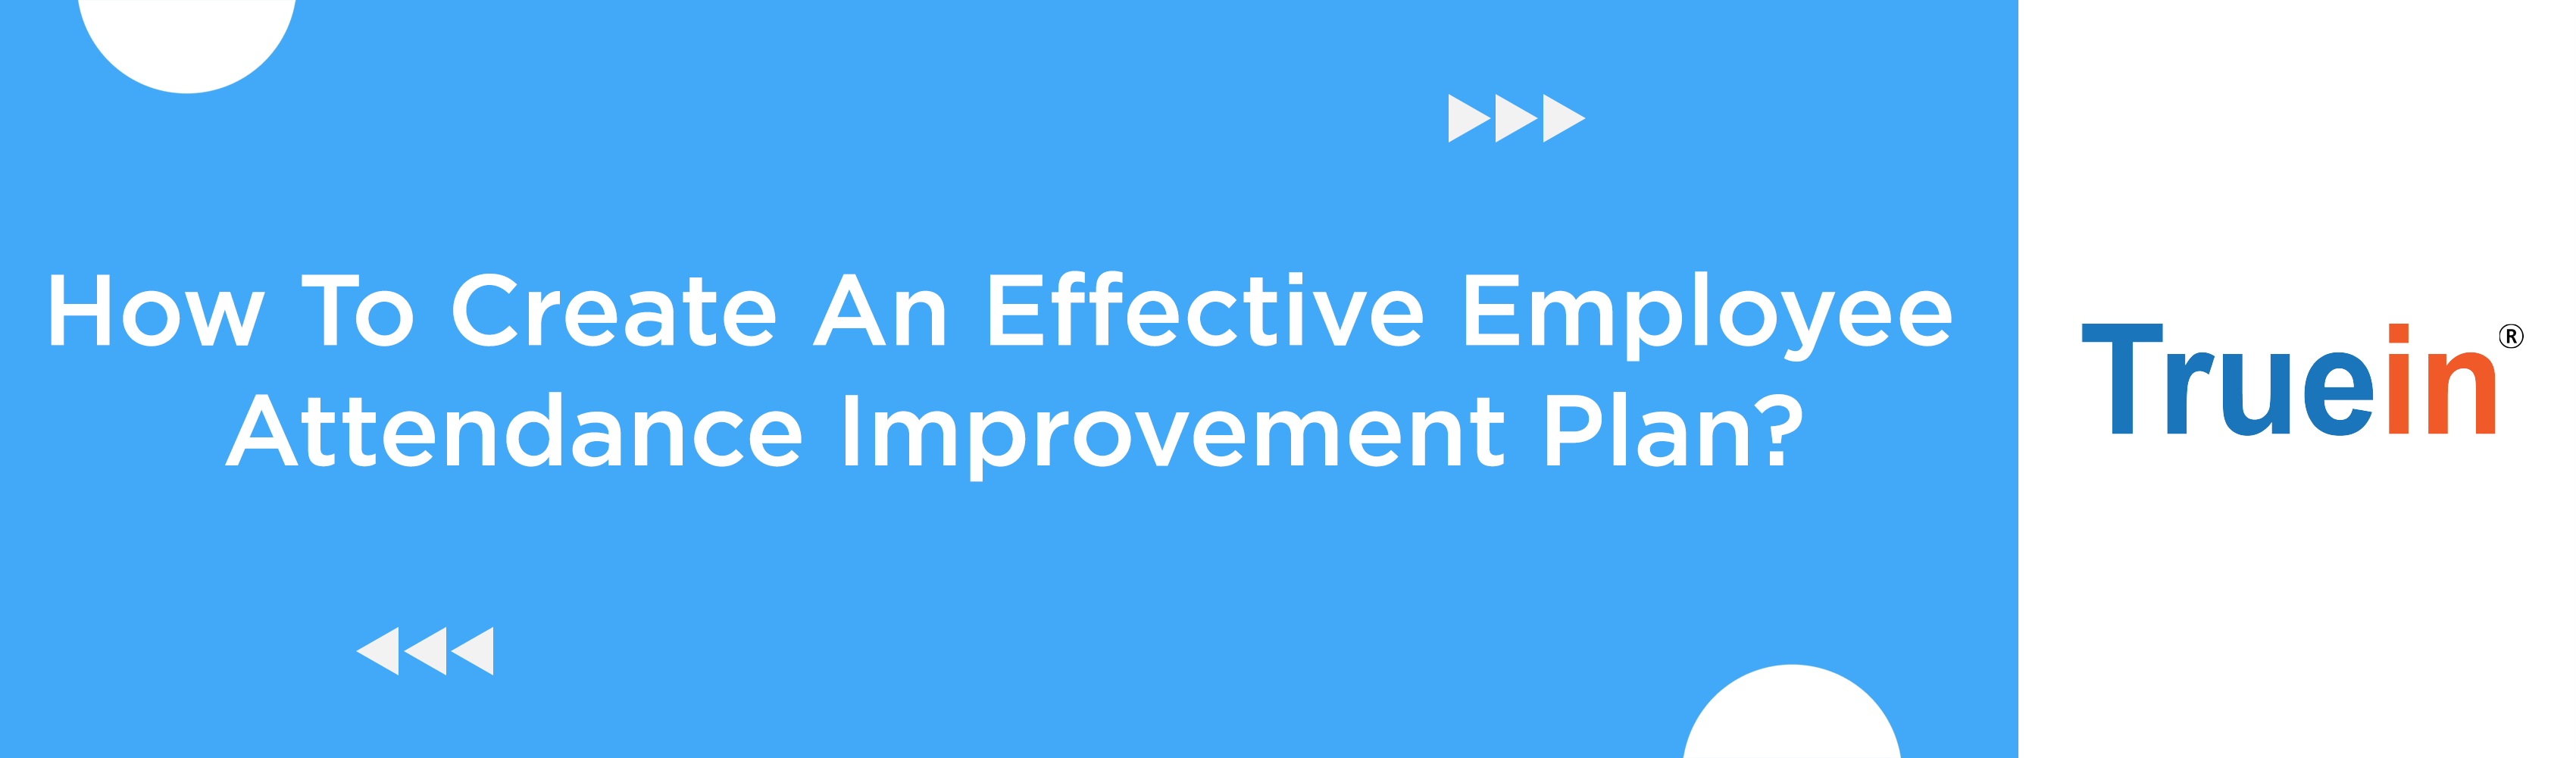 How To Create An Effective Employee Attendance Improvement Plan?